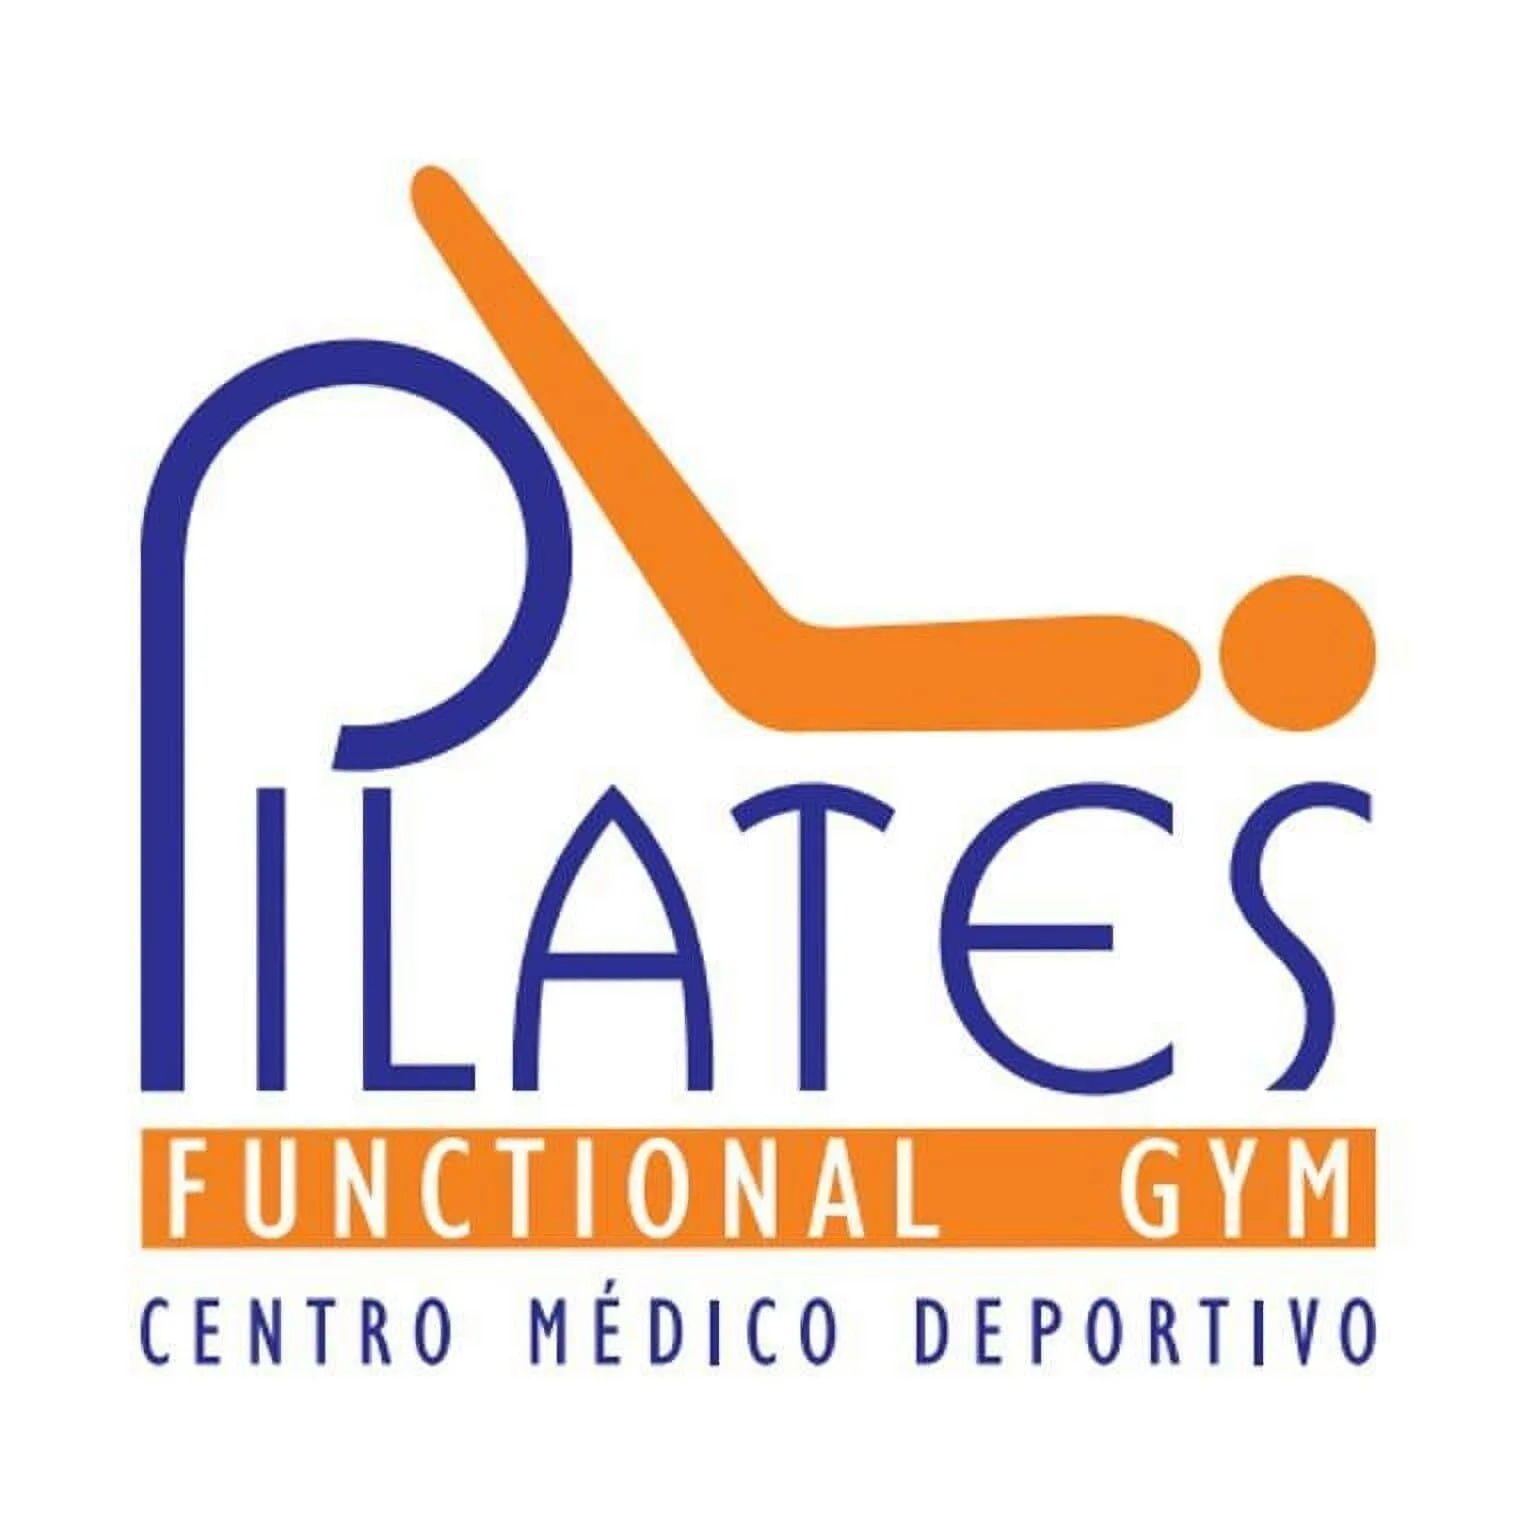 Pilates Functional Gym Sede La Flora-911